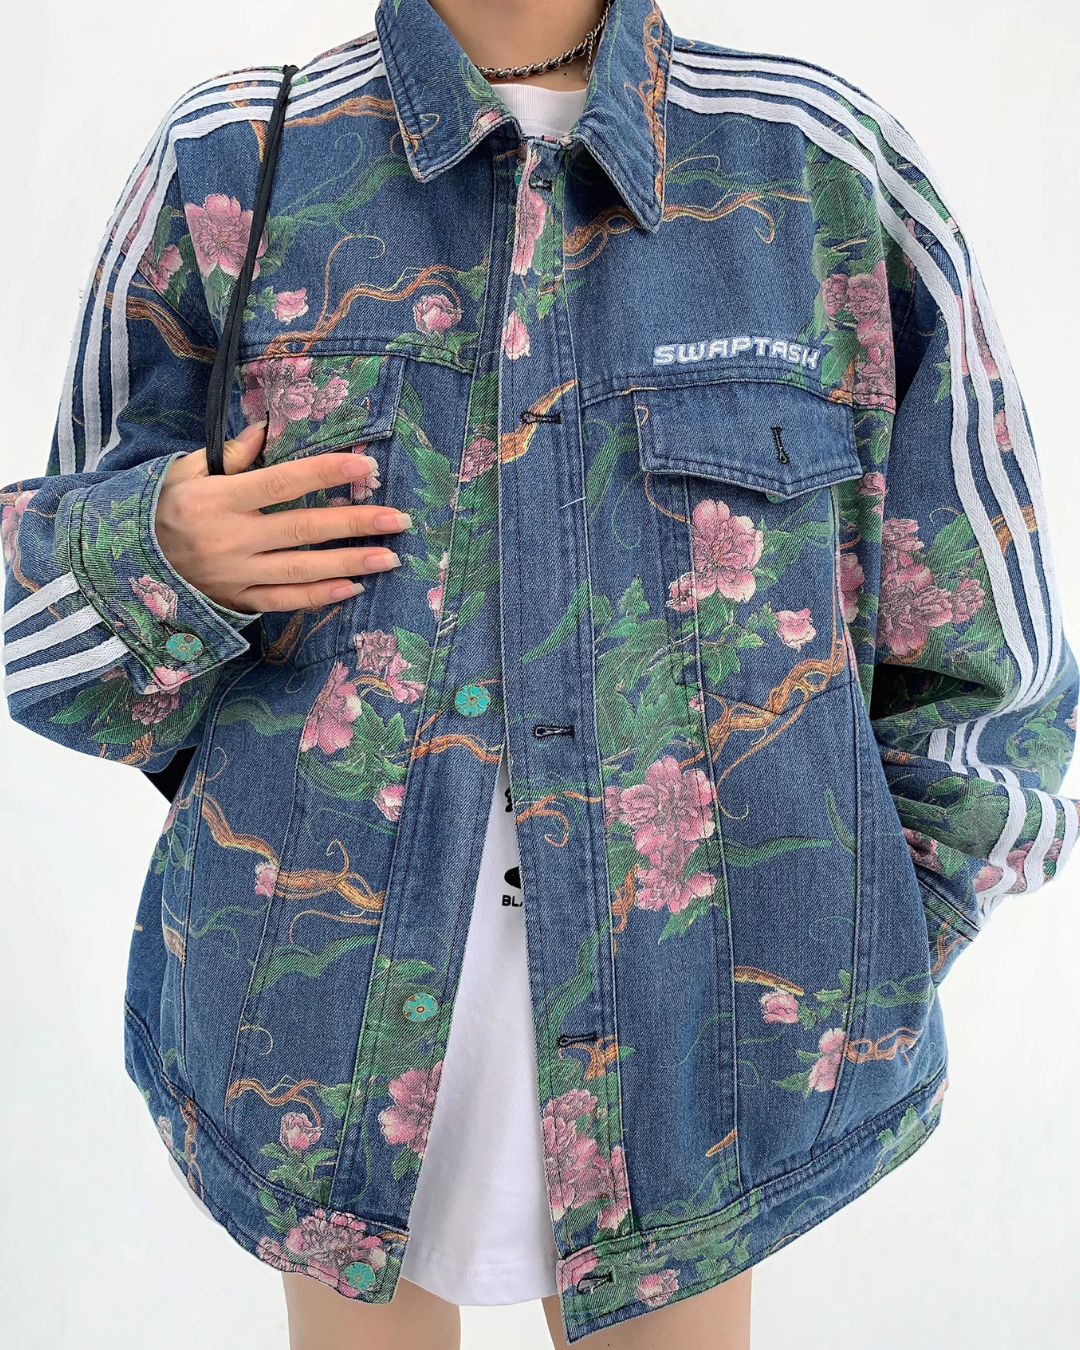 Floral Design Sideline Denim Jacket YLS0139